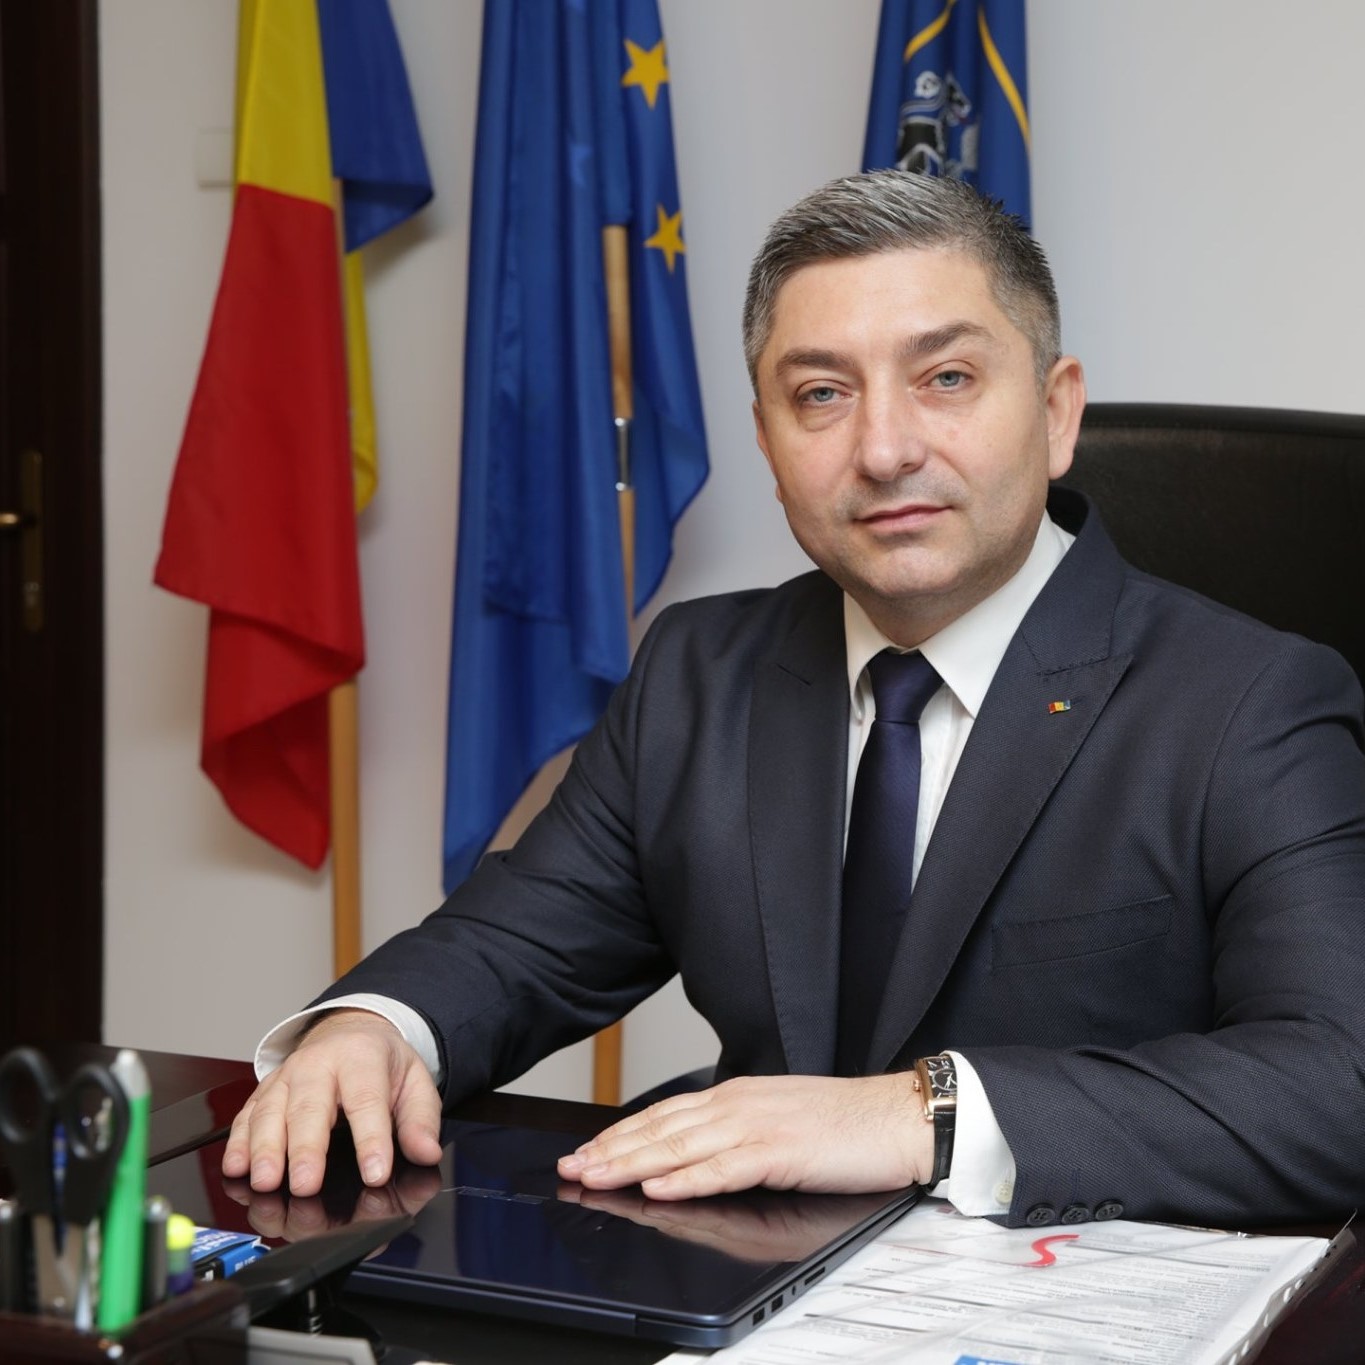 Președintele CJ Cluj, Alin Tișe: „Pot să merg prin județ fără să îmi fie teamă că oamenii mă înjură”. Sursă foto: Facebook/ Alin Tișe